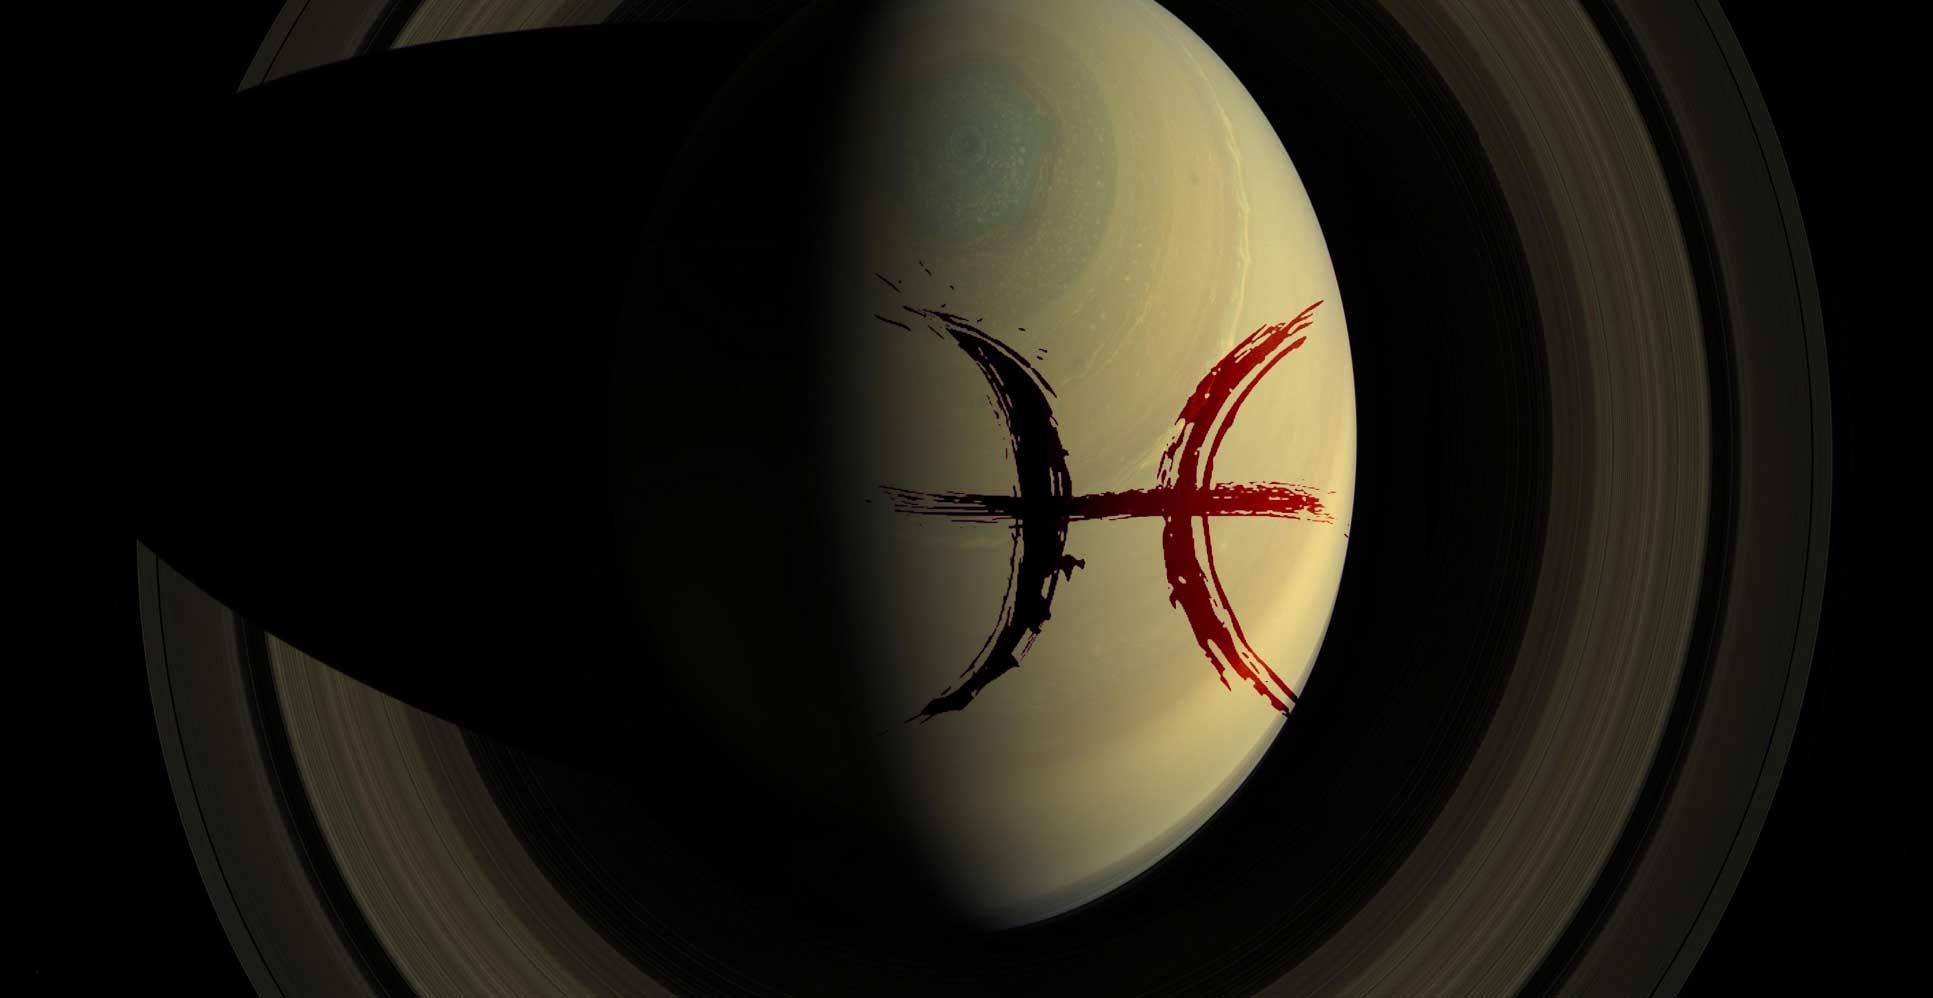 Imagen parcial de Saturno con el símbolo de Piscis sobreimpresionado